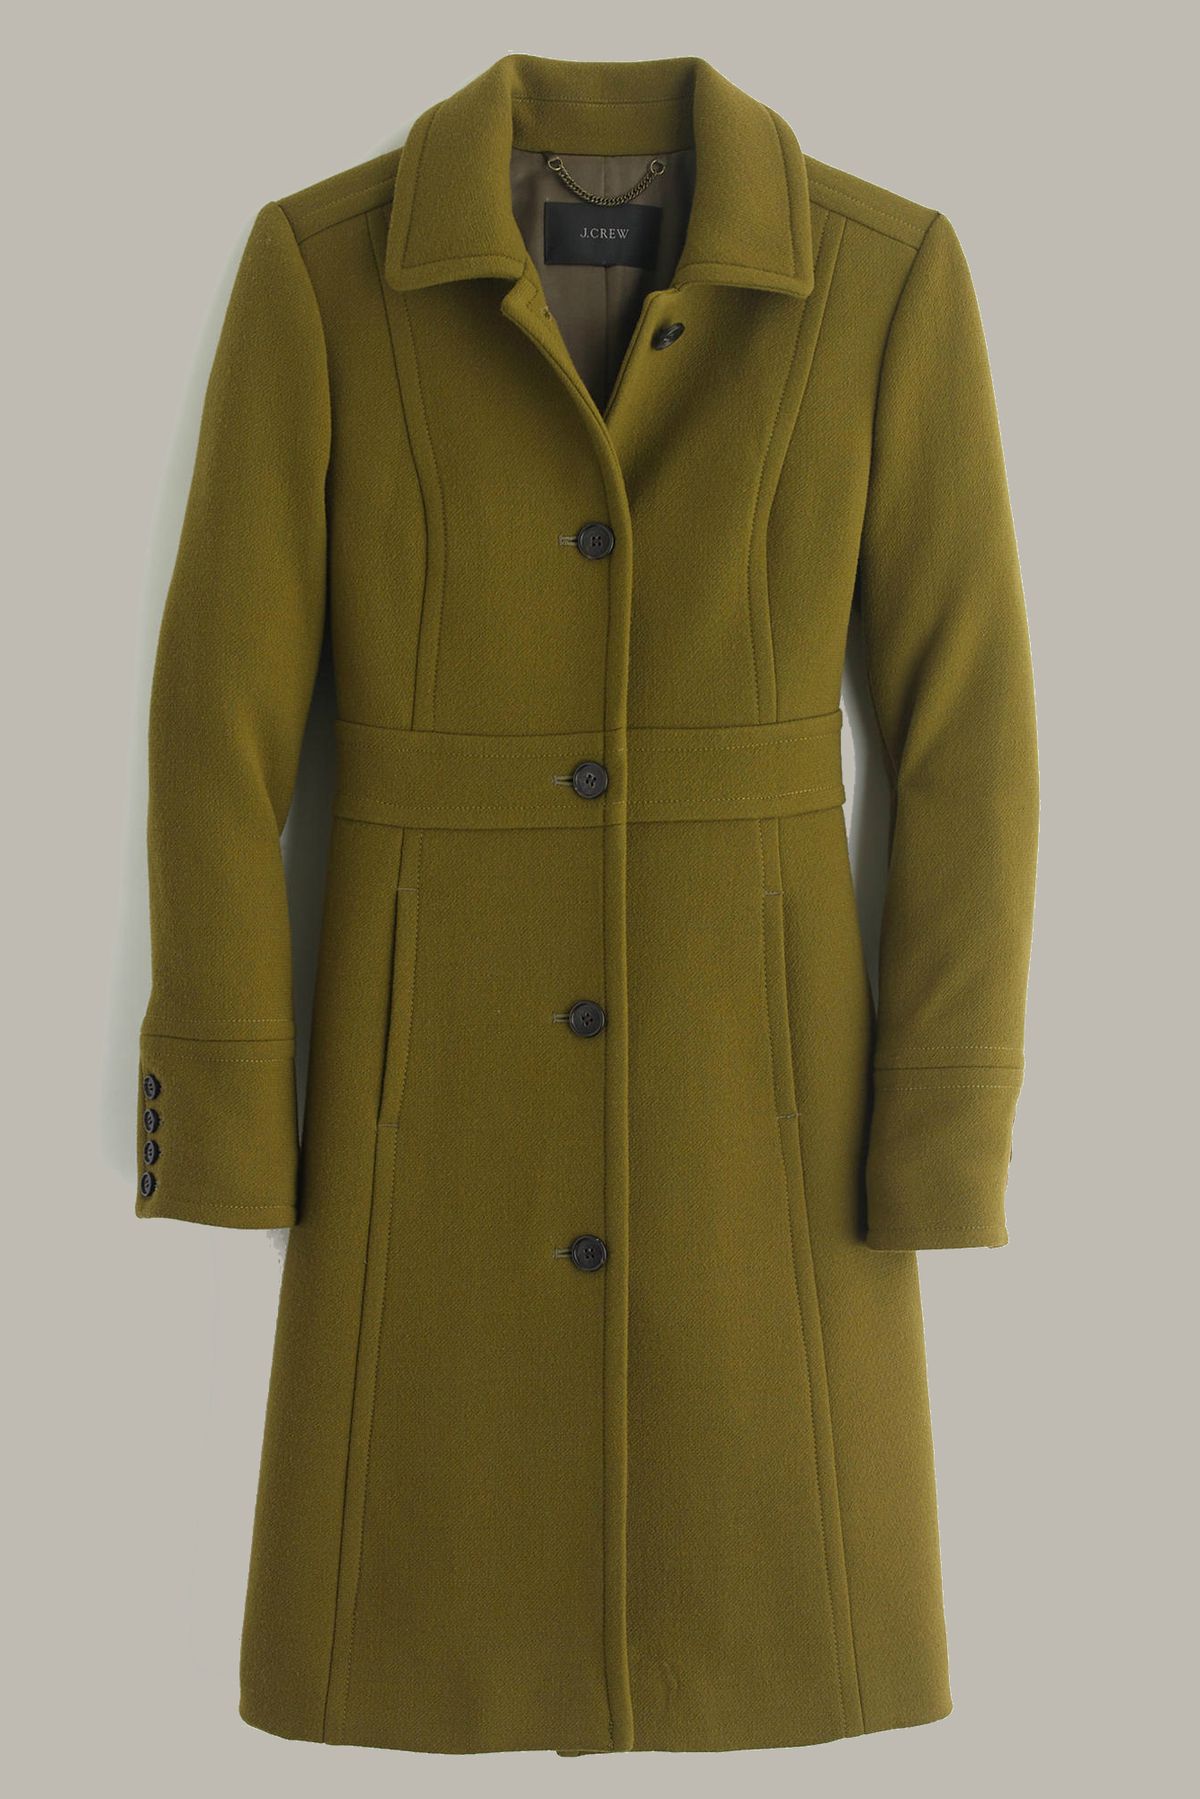 A green wool coat